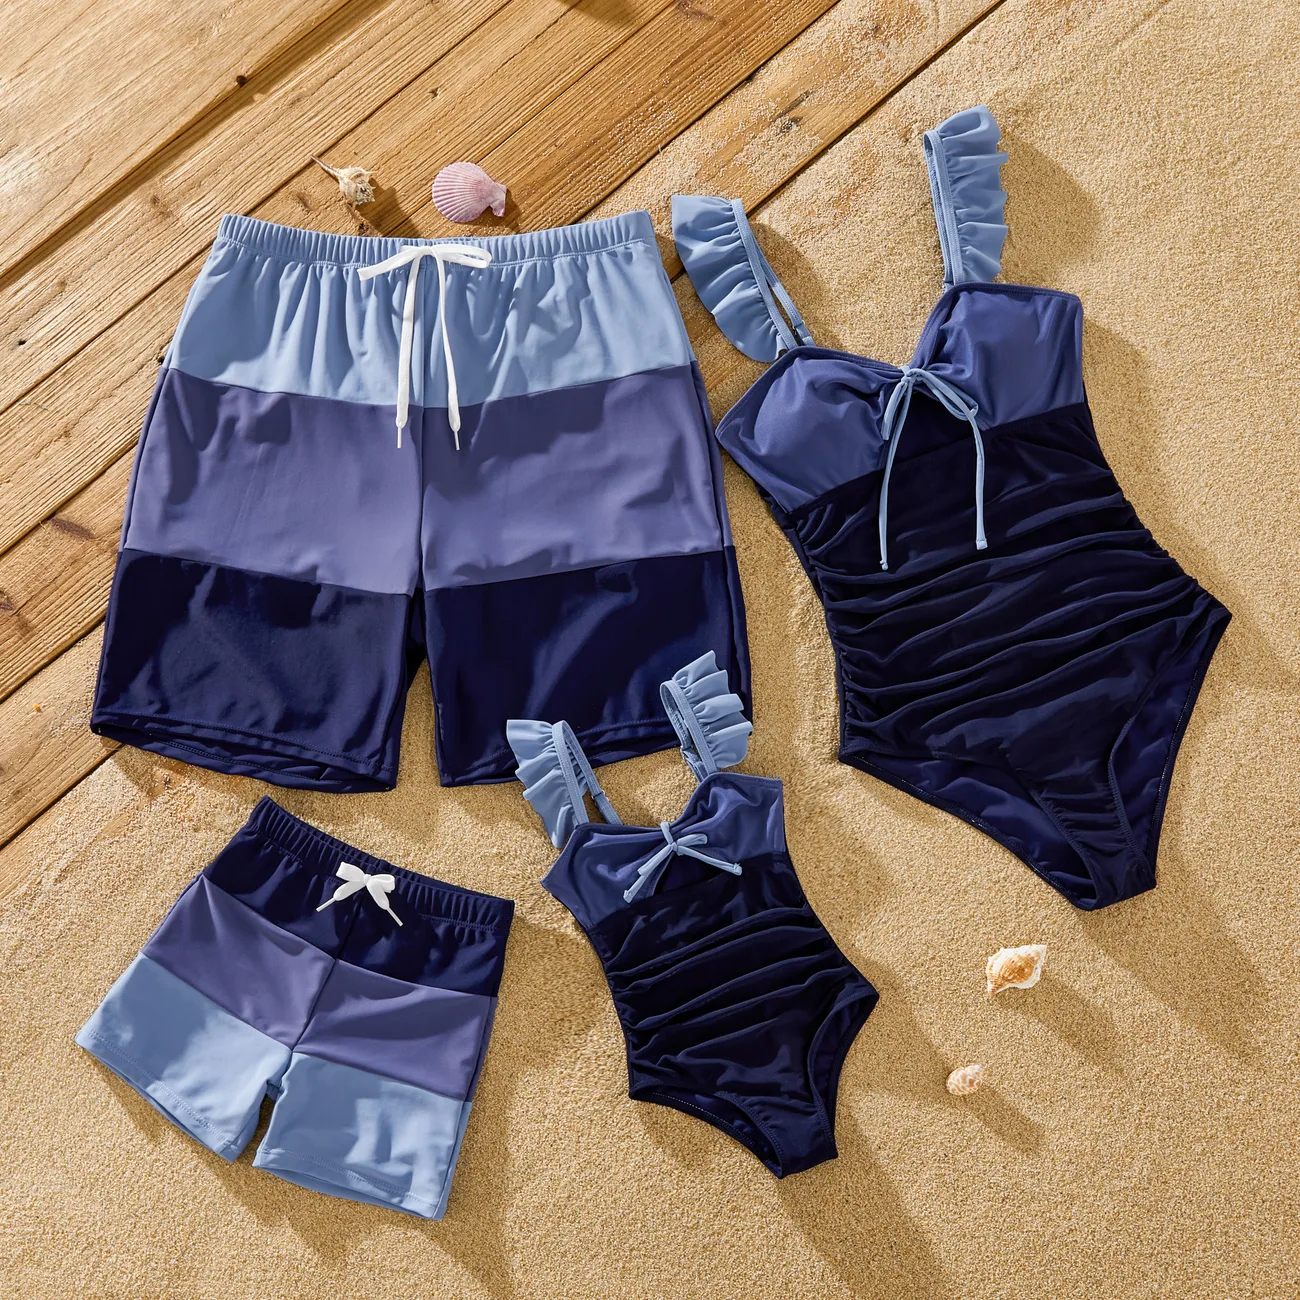 ملابس السباحة إطلالة العائلة للجنسين خياطة النسيج لون سادة متعدد الألوان big image 1